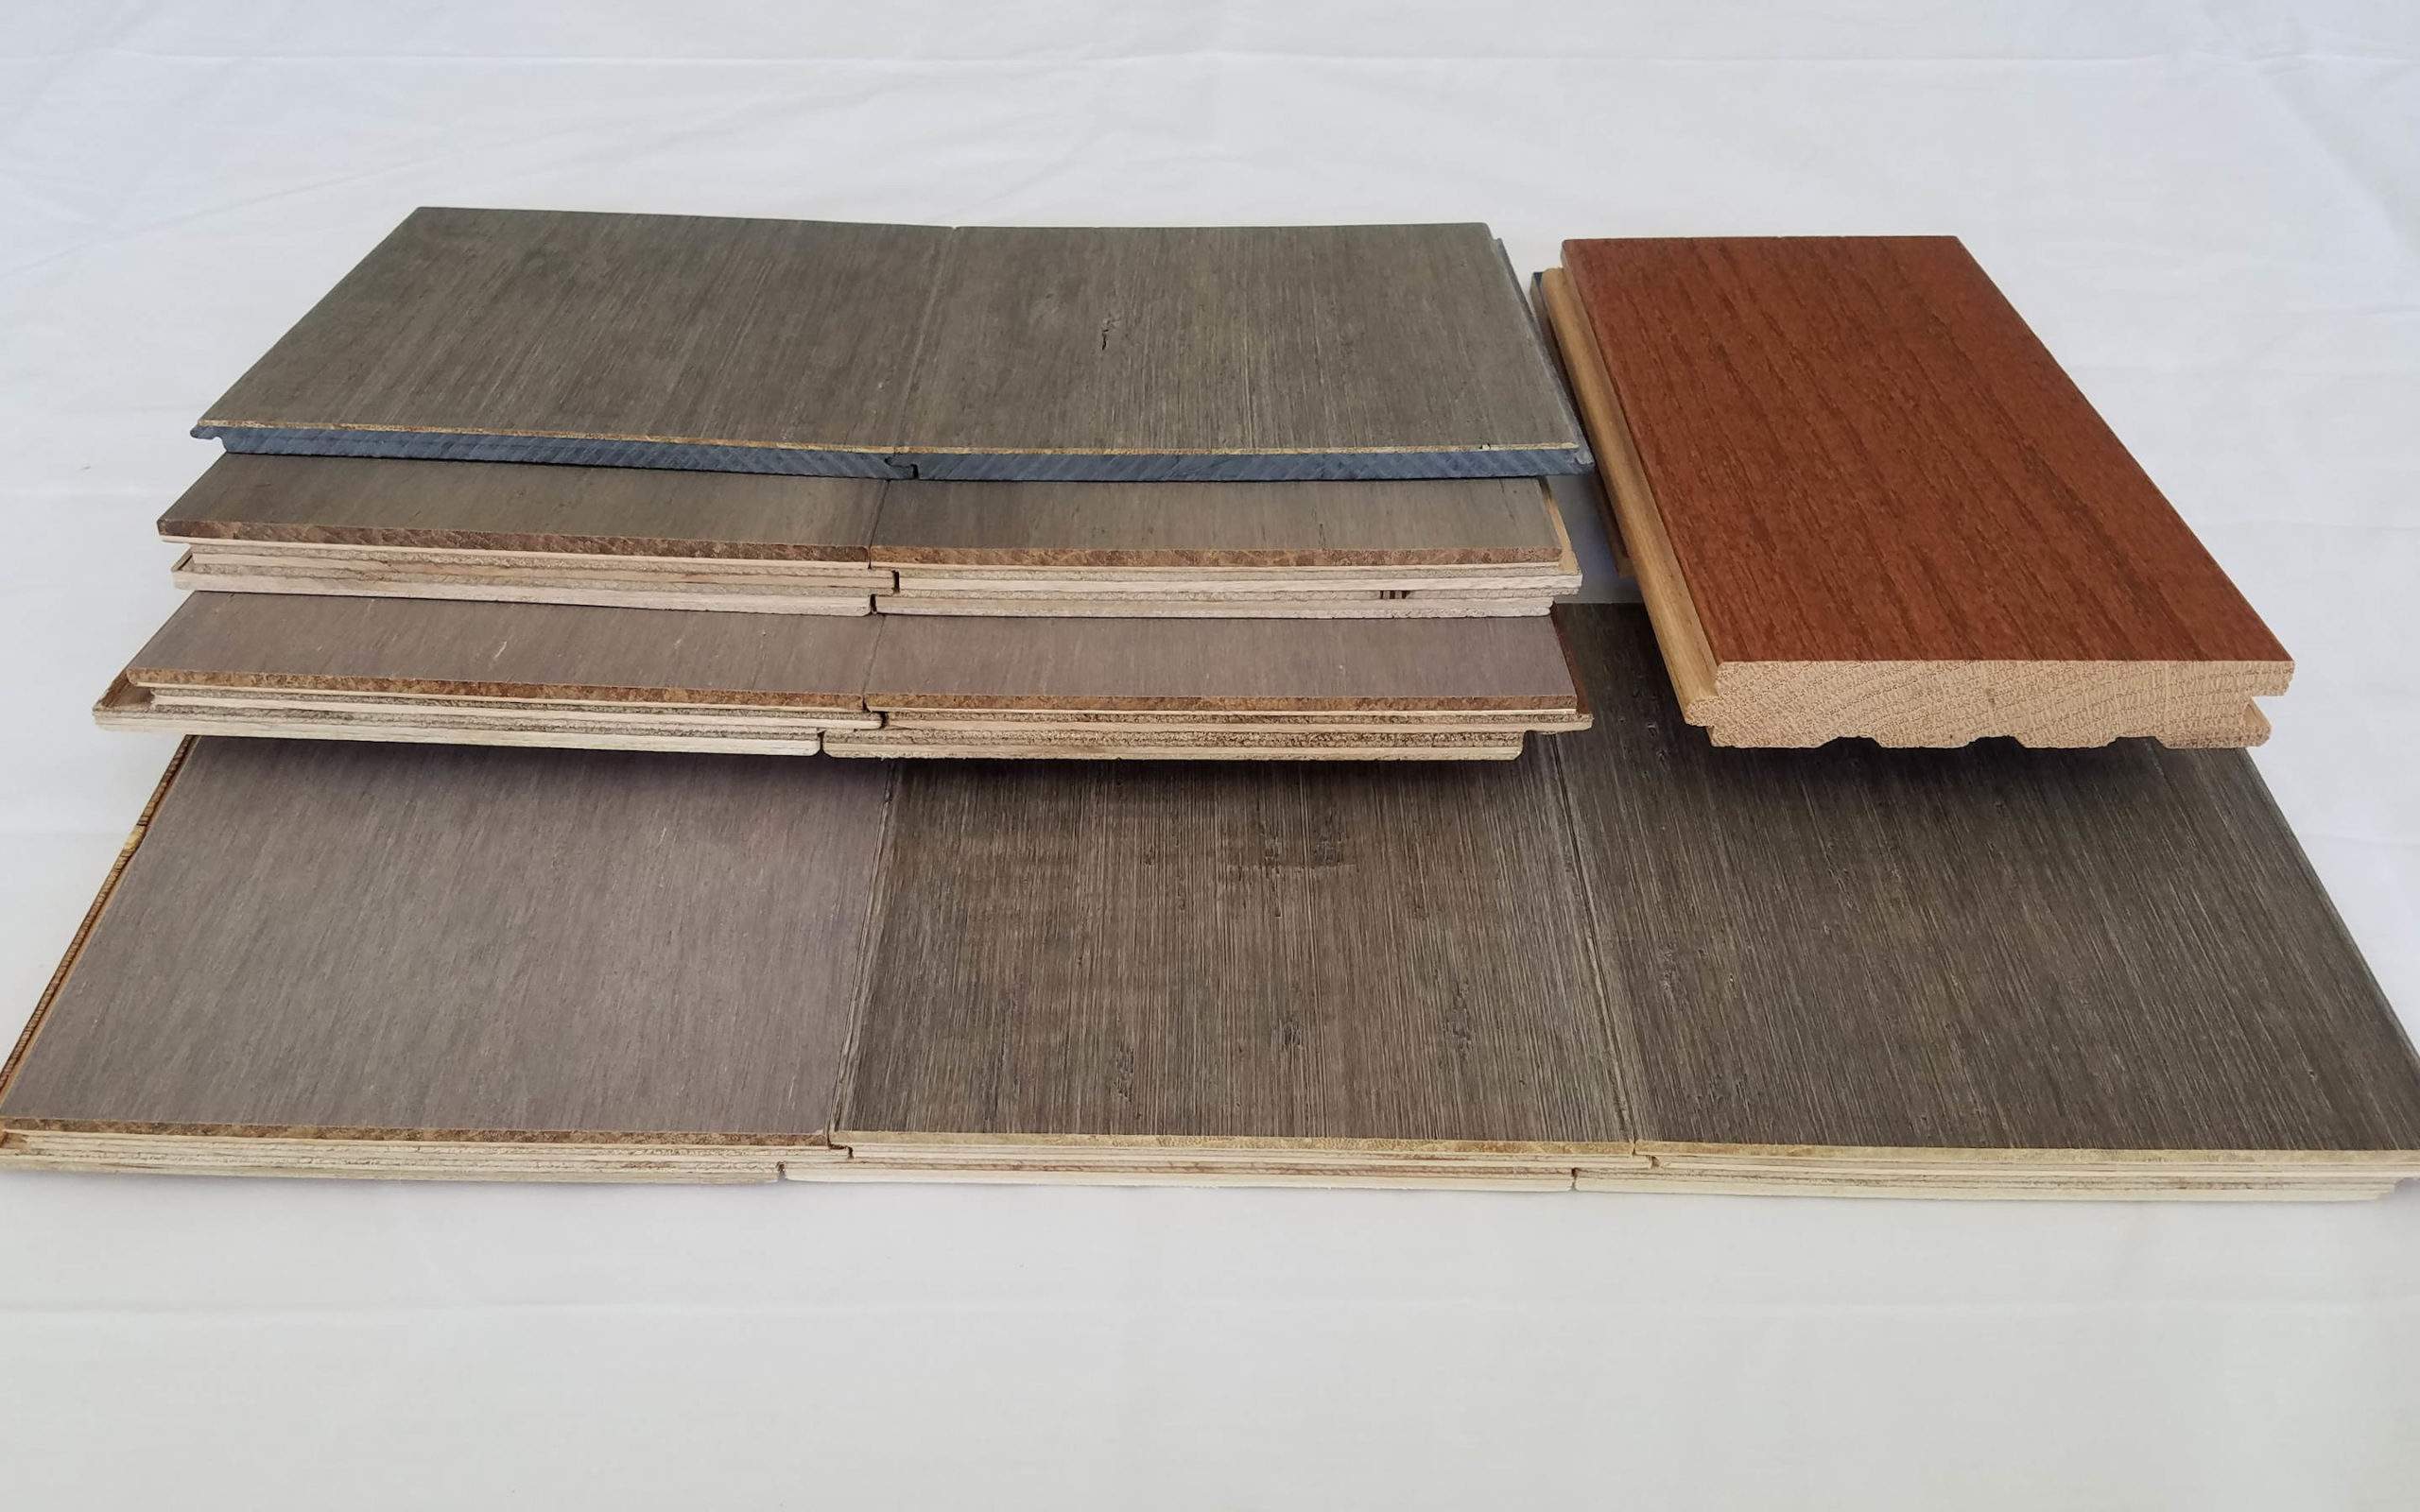 edge samples of engineered wood and hardwood flooring